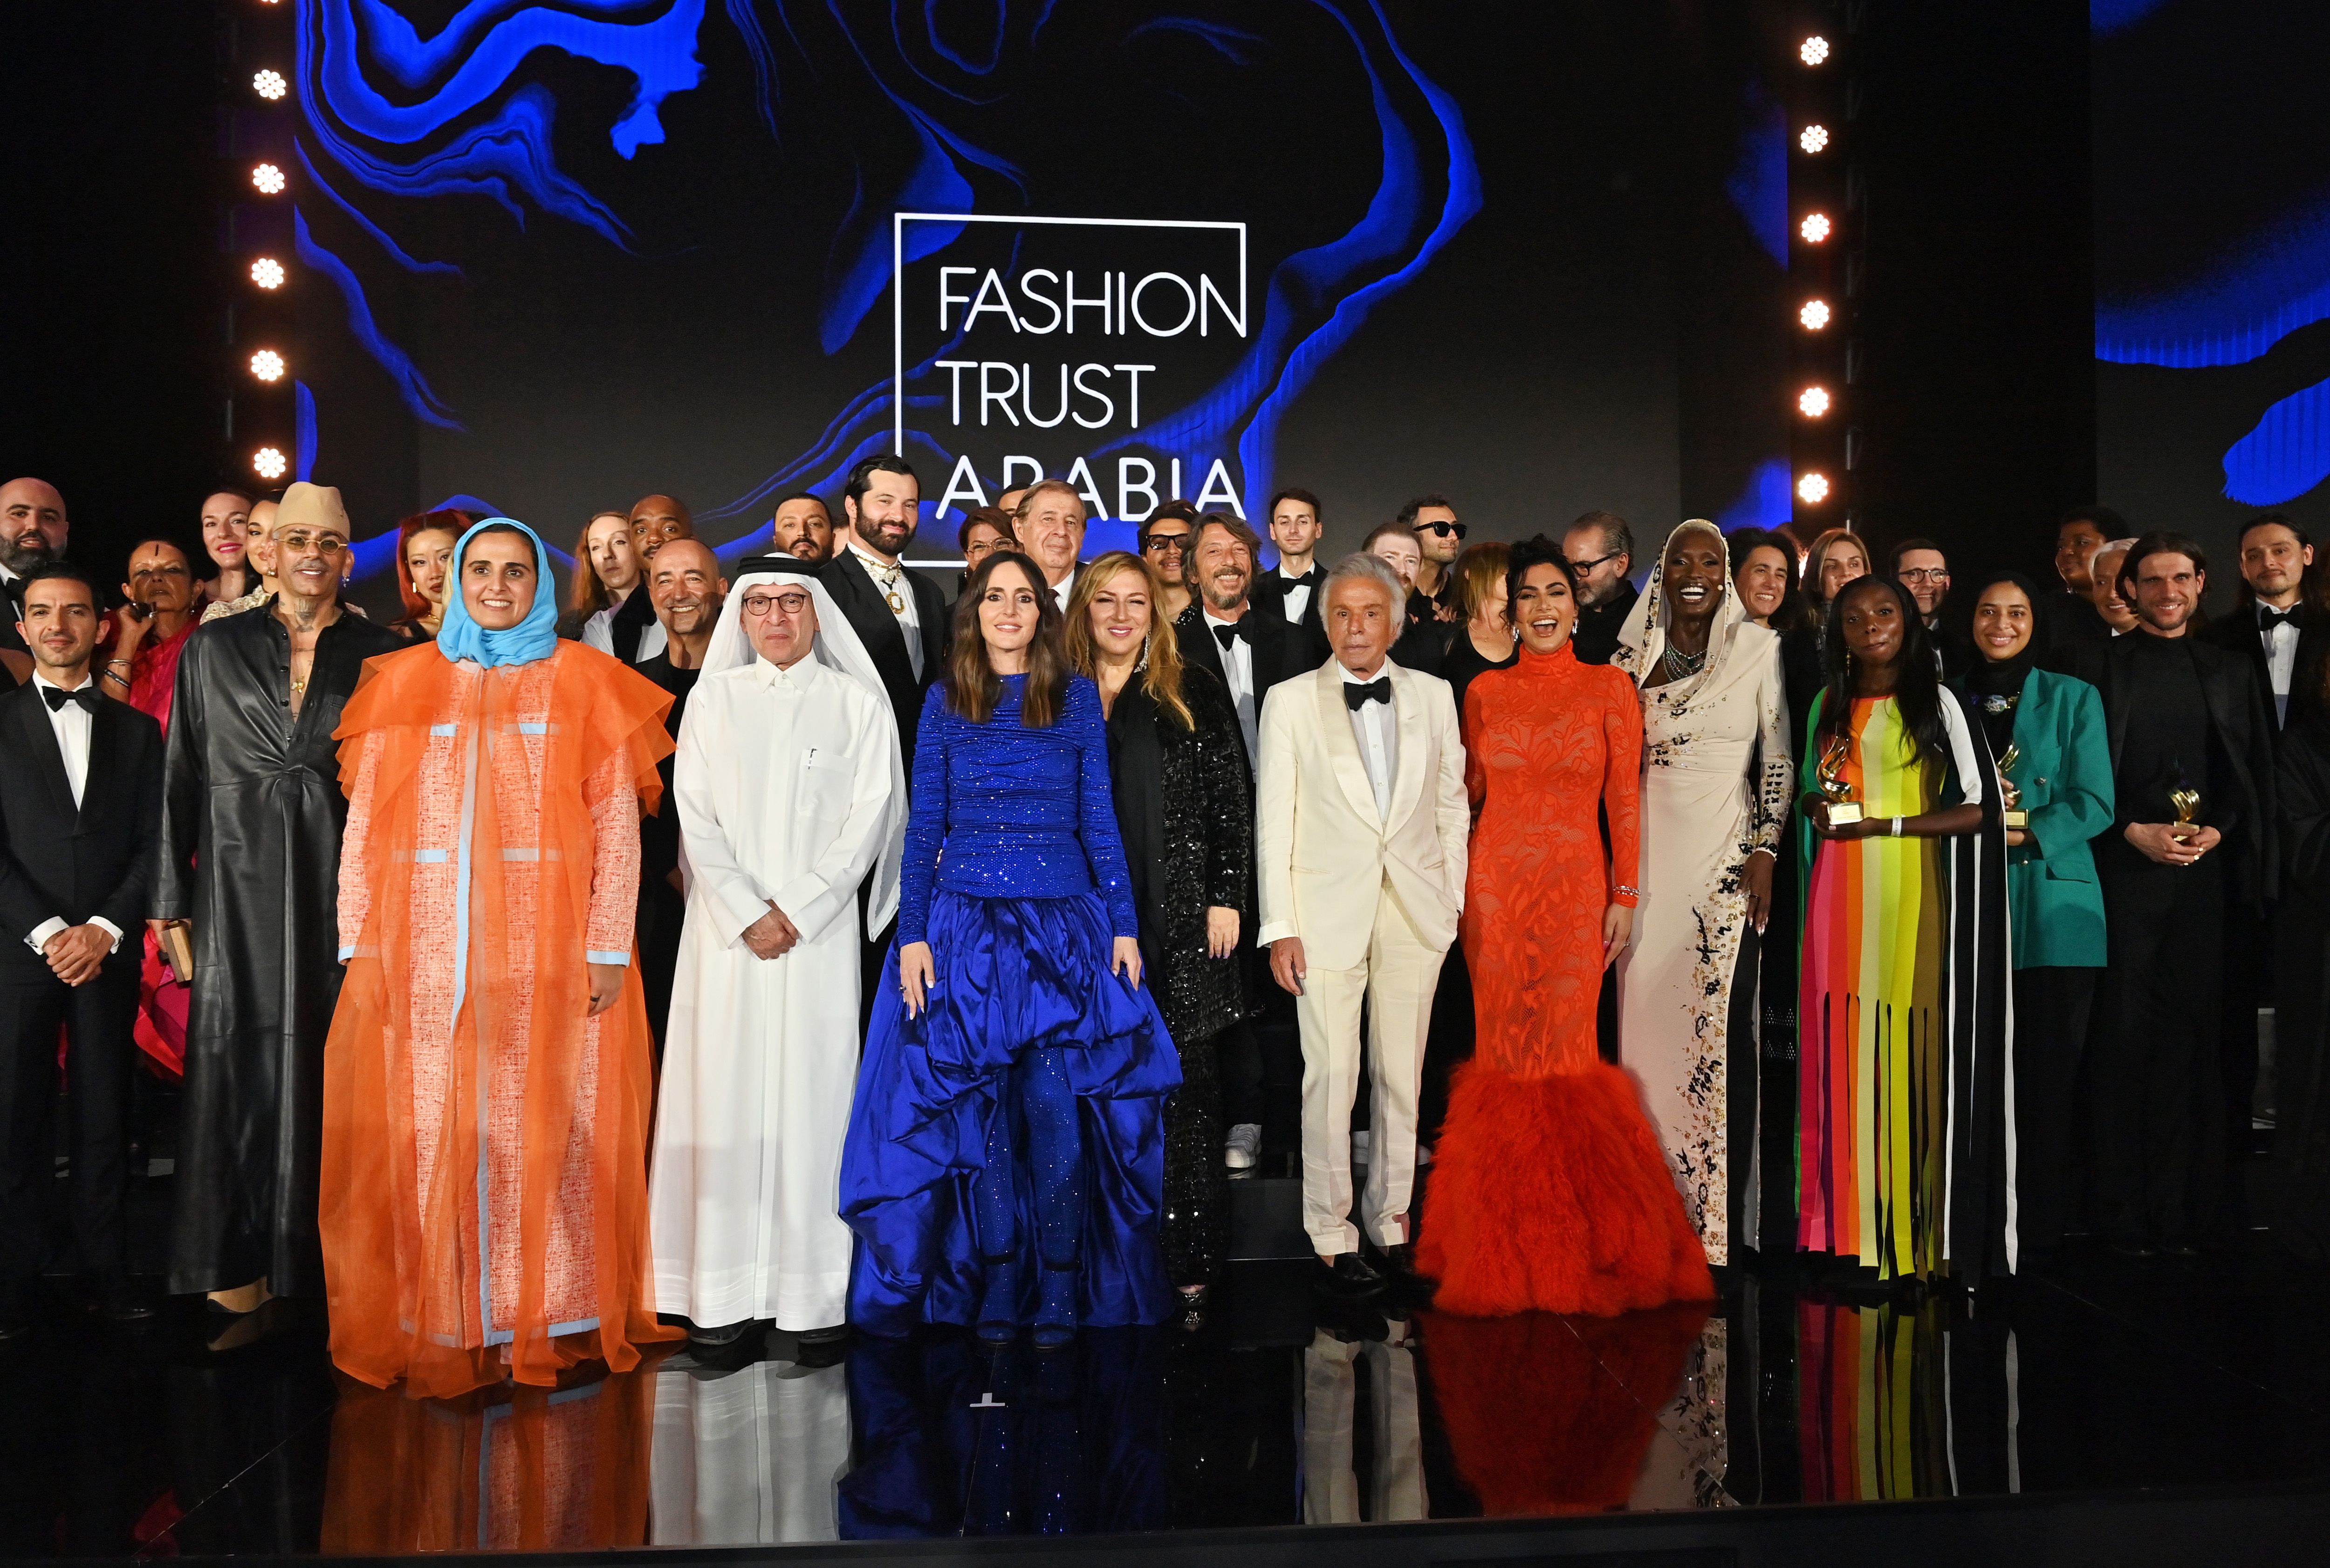 The Full List of Winners at Fashion Trust Arabia 2022